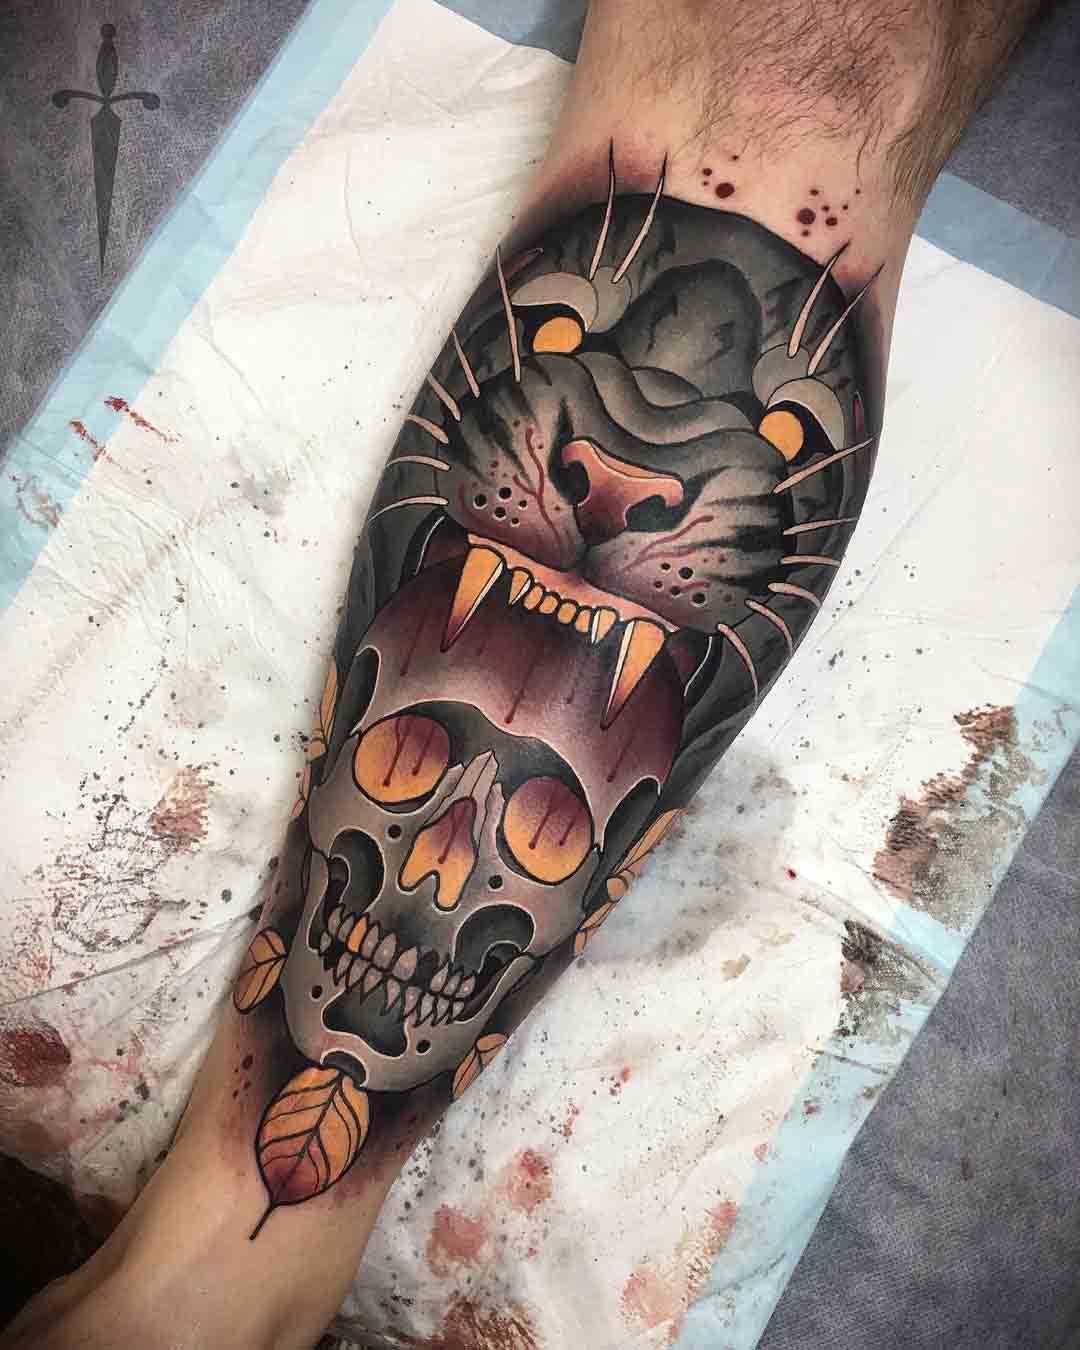 Skull and Tiger Tattoo on Calf - Best Tattoo Ideas Gallery